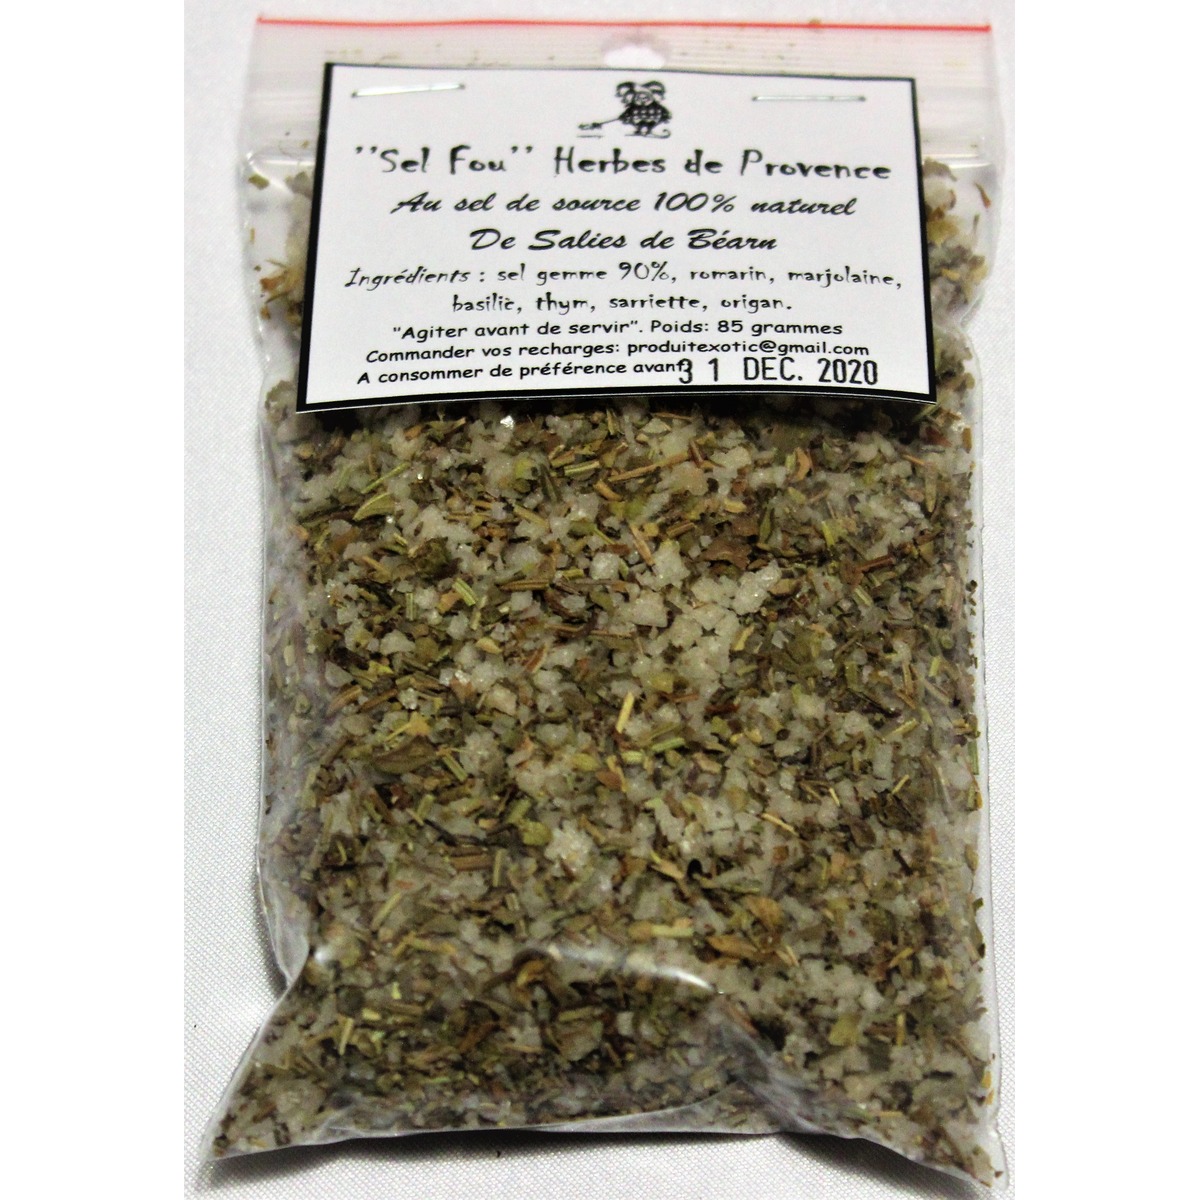 https://produits-exotiques.com/442-thickbox_default/sel-fou-herbes-de-provence-au-gros-sel-gemme-de-source-100-naturel-de-salies-de-bearn-recharge-85-gr.jpg